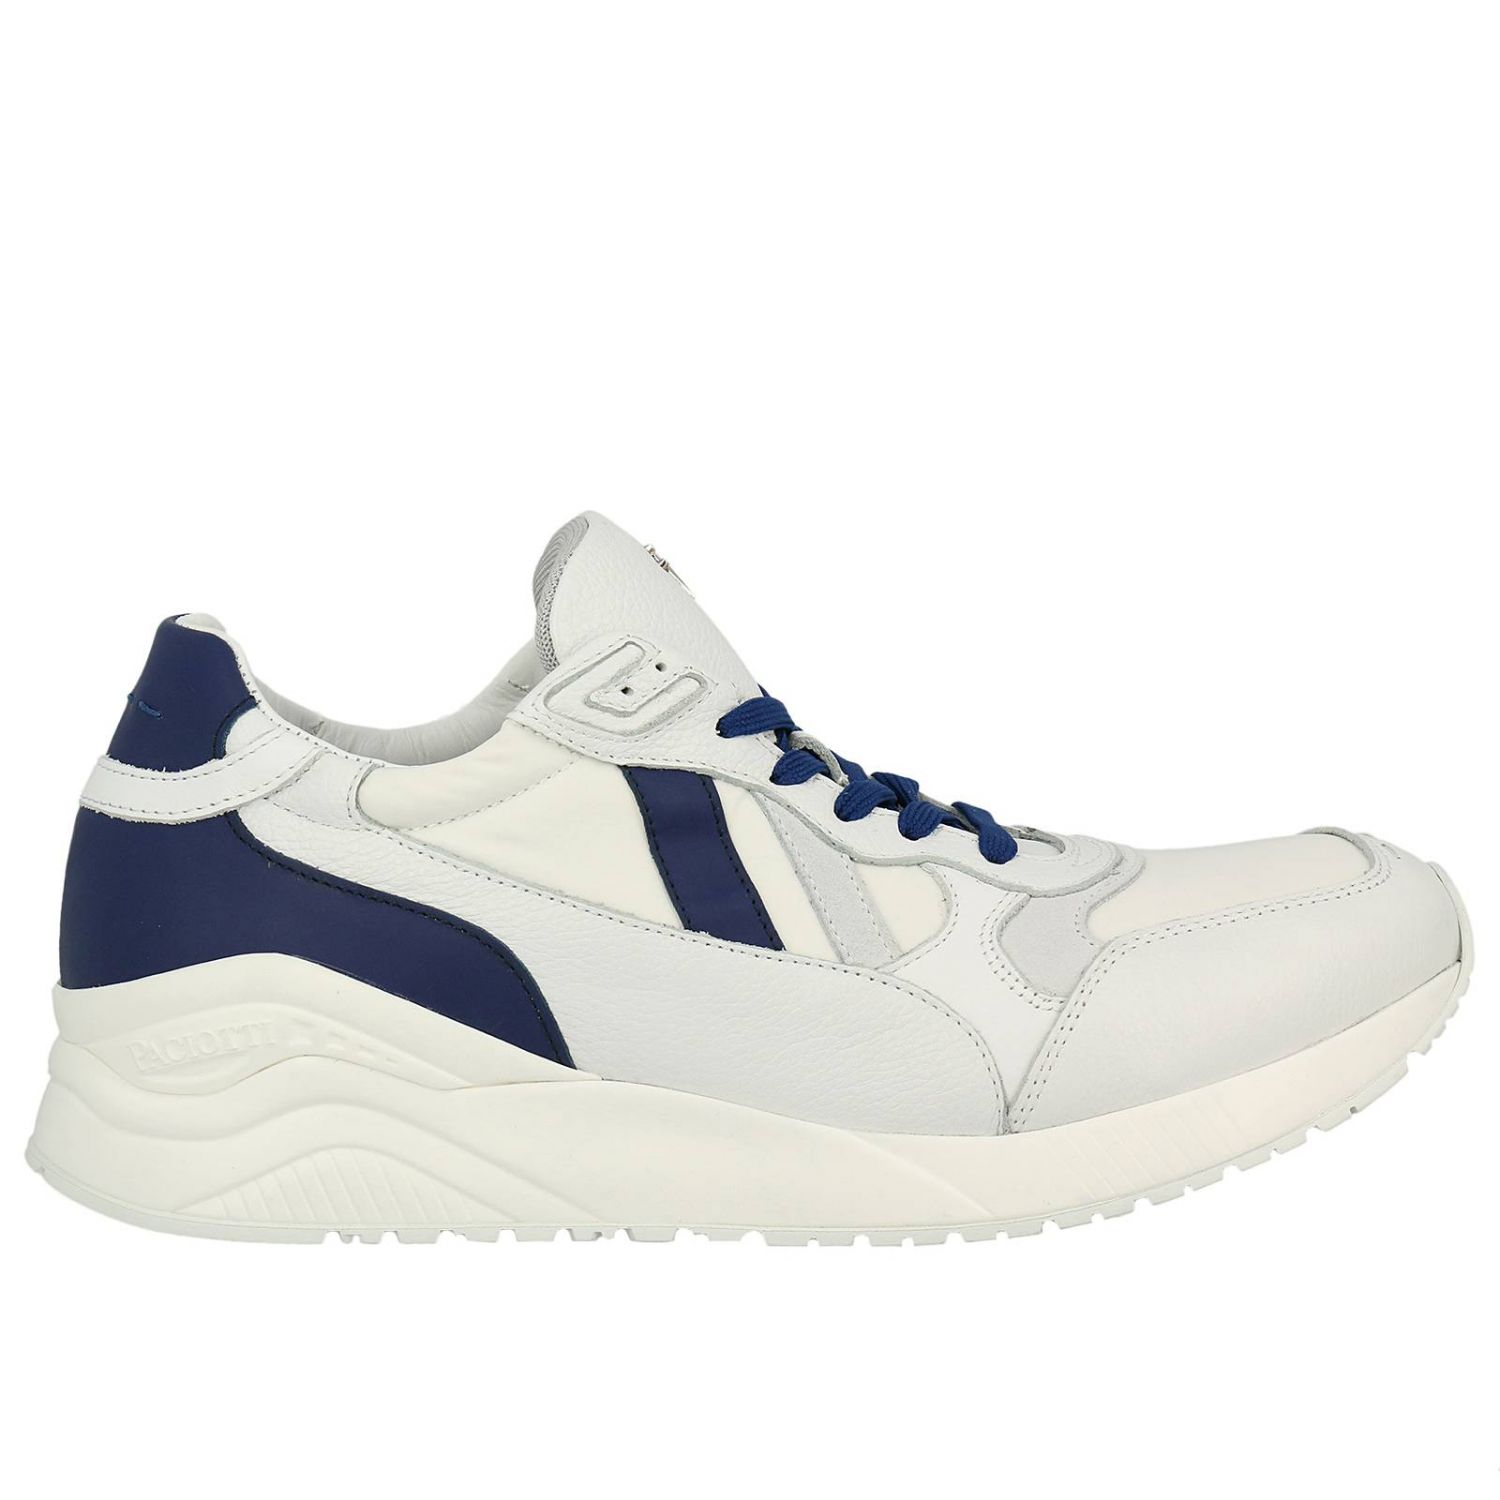 Paciotti 4Us Outlet: Shoes men - White | Sneakers Paciotti 4Us AU1TNN ...